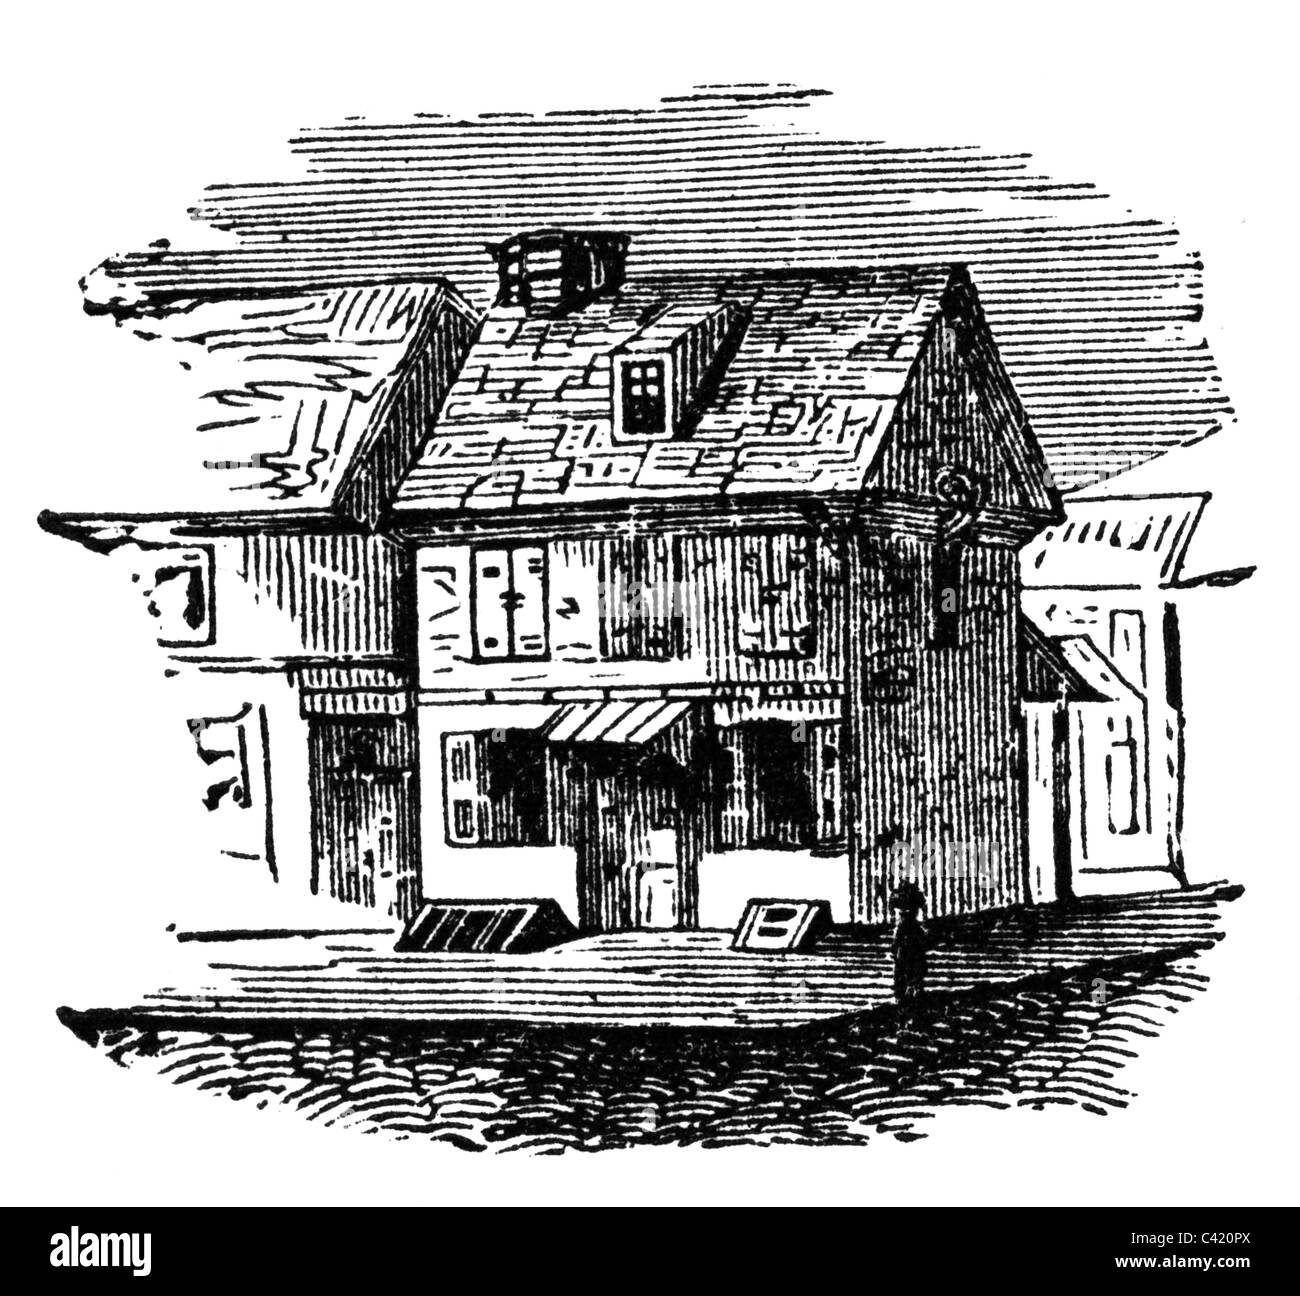 Penn, William, 14.10.1644 - 30.7.1718, politicien anglais, Quaker, fondateur de Pennsylvanie, sa maison, gravure sur bois, XIXe siècle, Banque D'Images